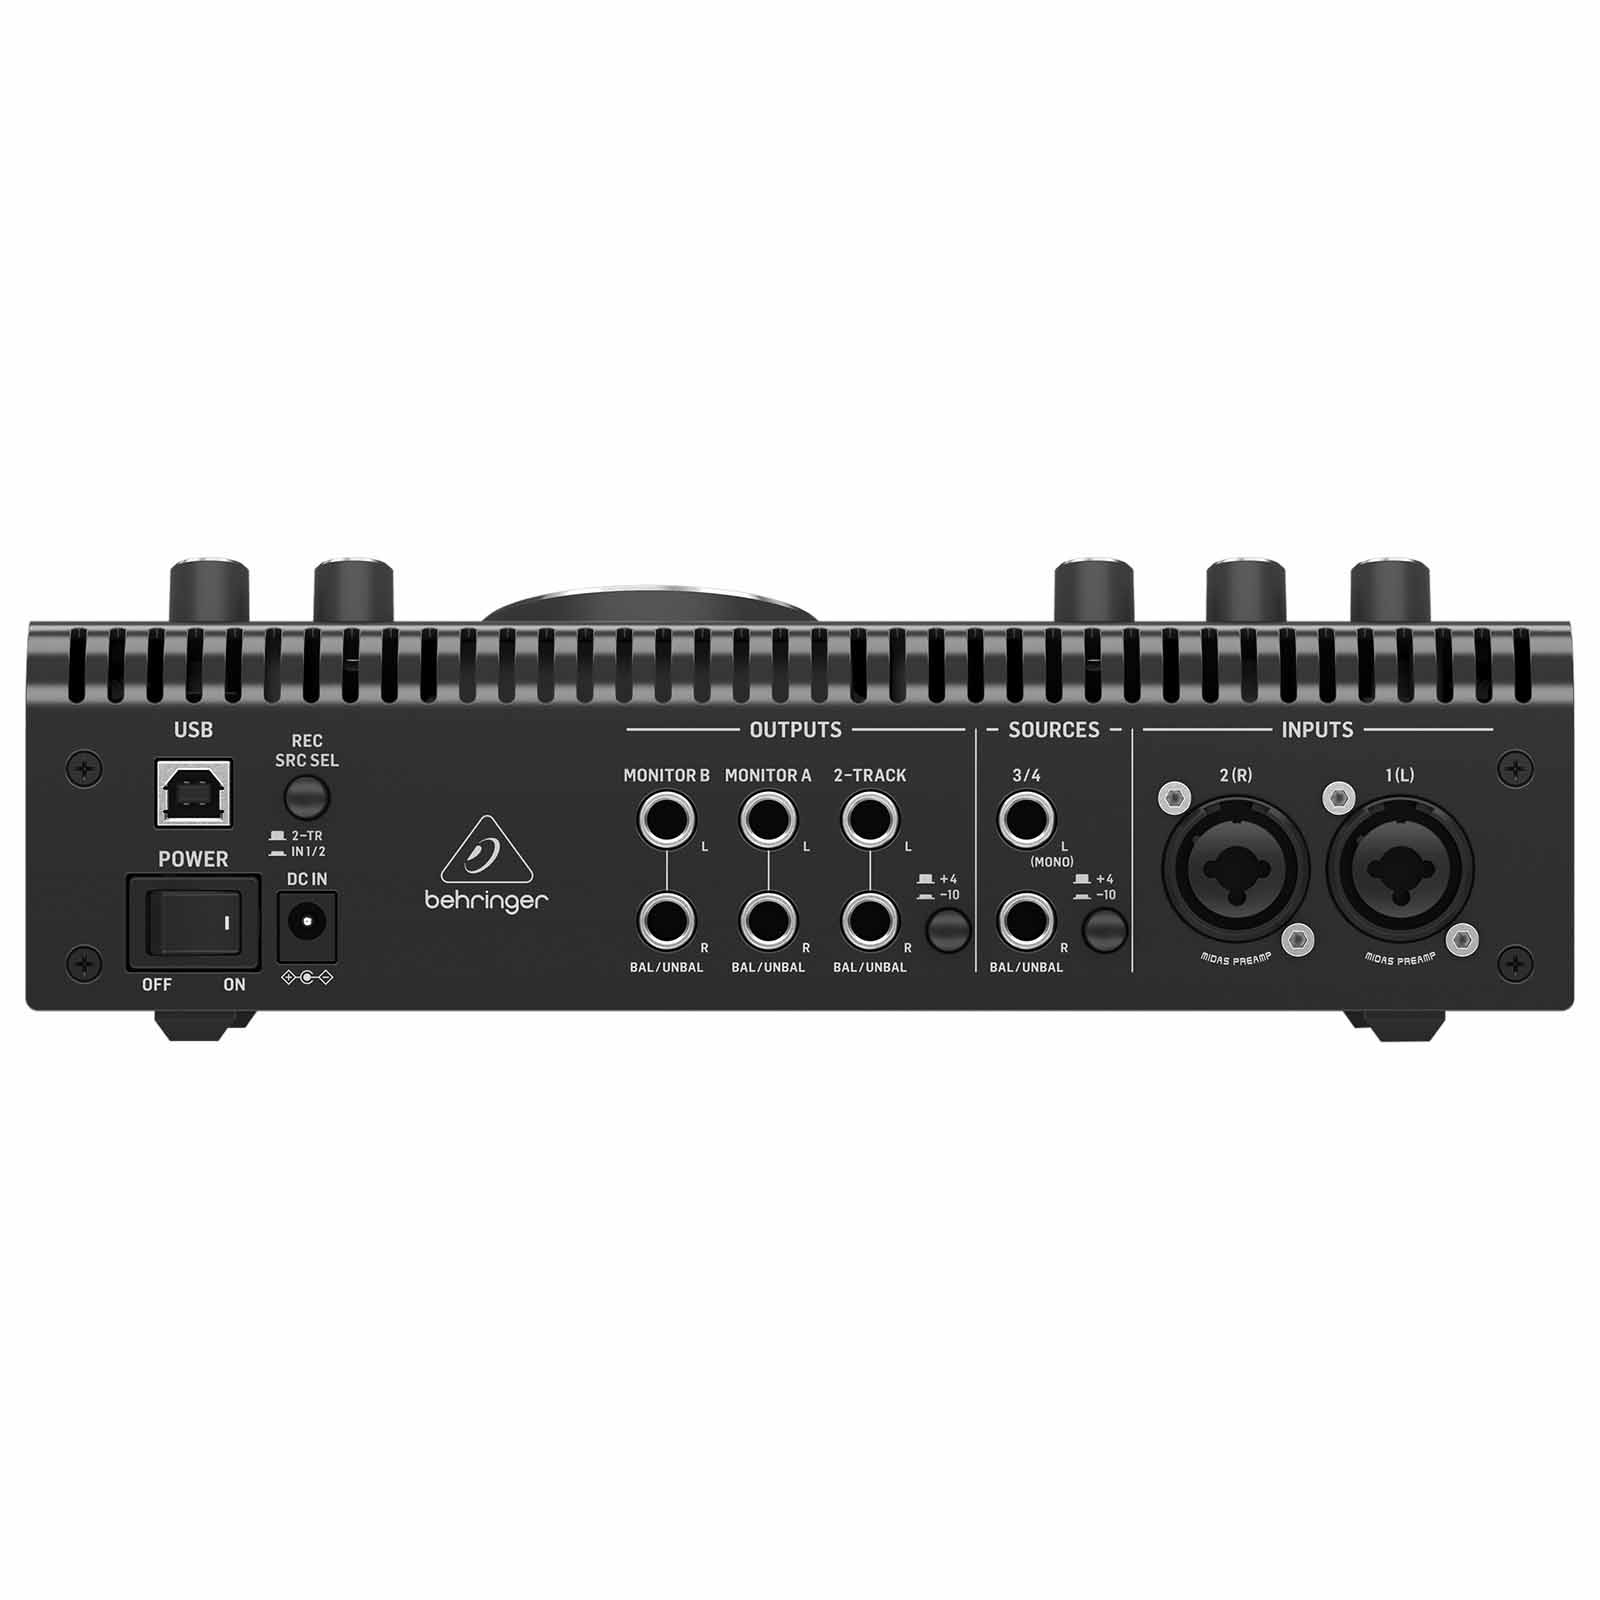 Controladores Roland Controlador Midi De 49 Teclas Pc/Mac Usb Color Negro  A49bk